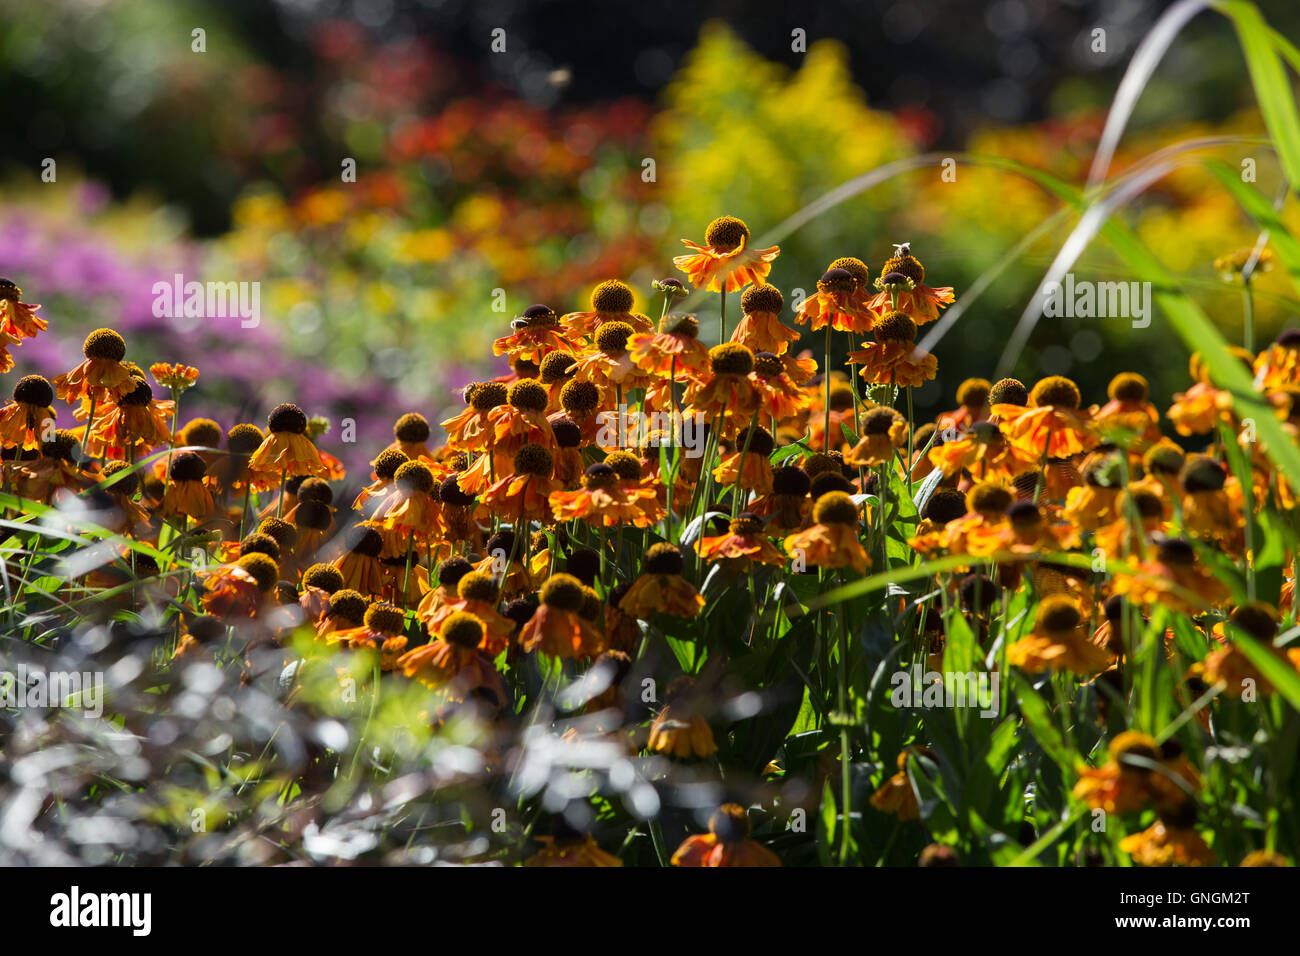 Cheerful Helenium fleurs apportent des couleurs vives pour un jardin à la fin de l'été et l'automne inj Banque D'Images